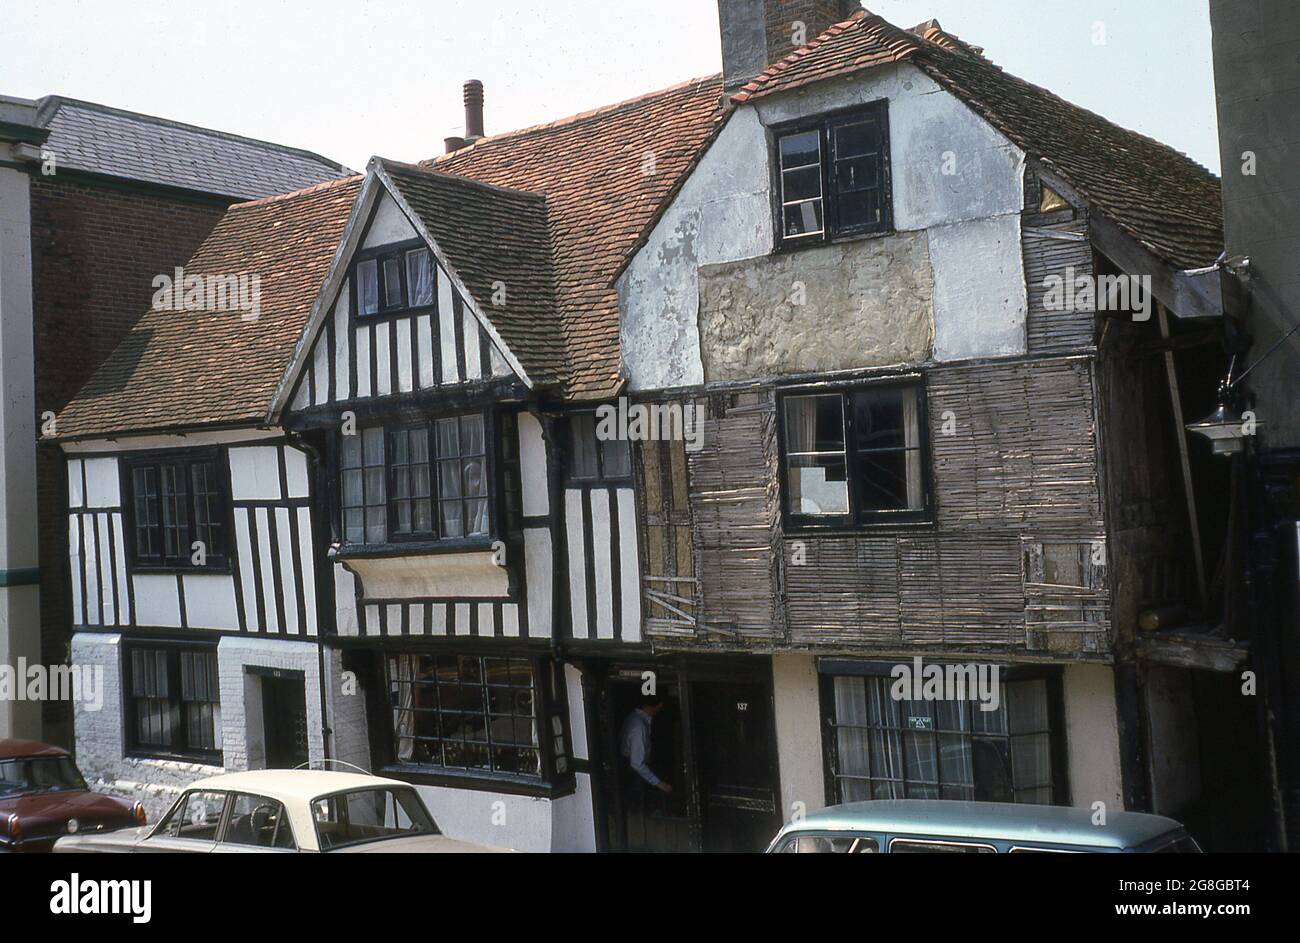 1975, vista esterna da questa era di un vecchio edificio storico Tudor in fase di riparazione, 137 All Saints Street nella città vecchia di Hastings, East Sussex, Inghilterra, Regno Unito. Le case a graticcio sono soggette alle devastazioni del tempo e del tempo, ma degli edifici antichi, le case medievali e Tudor sono alcune delle case più antiche sopravvissute. Foto Stock